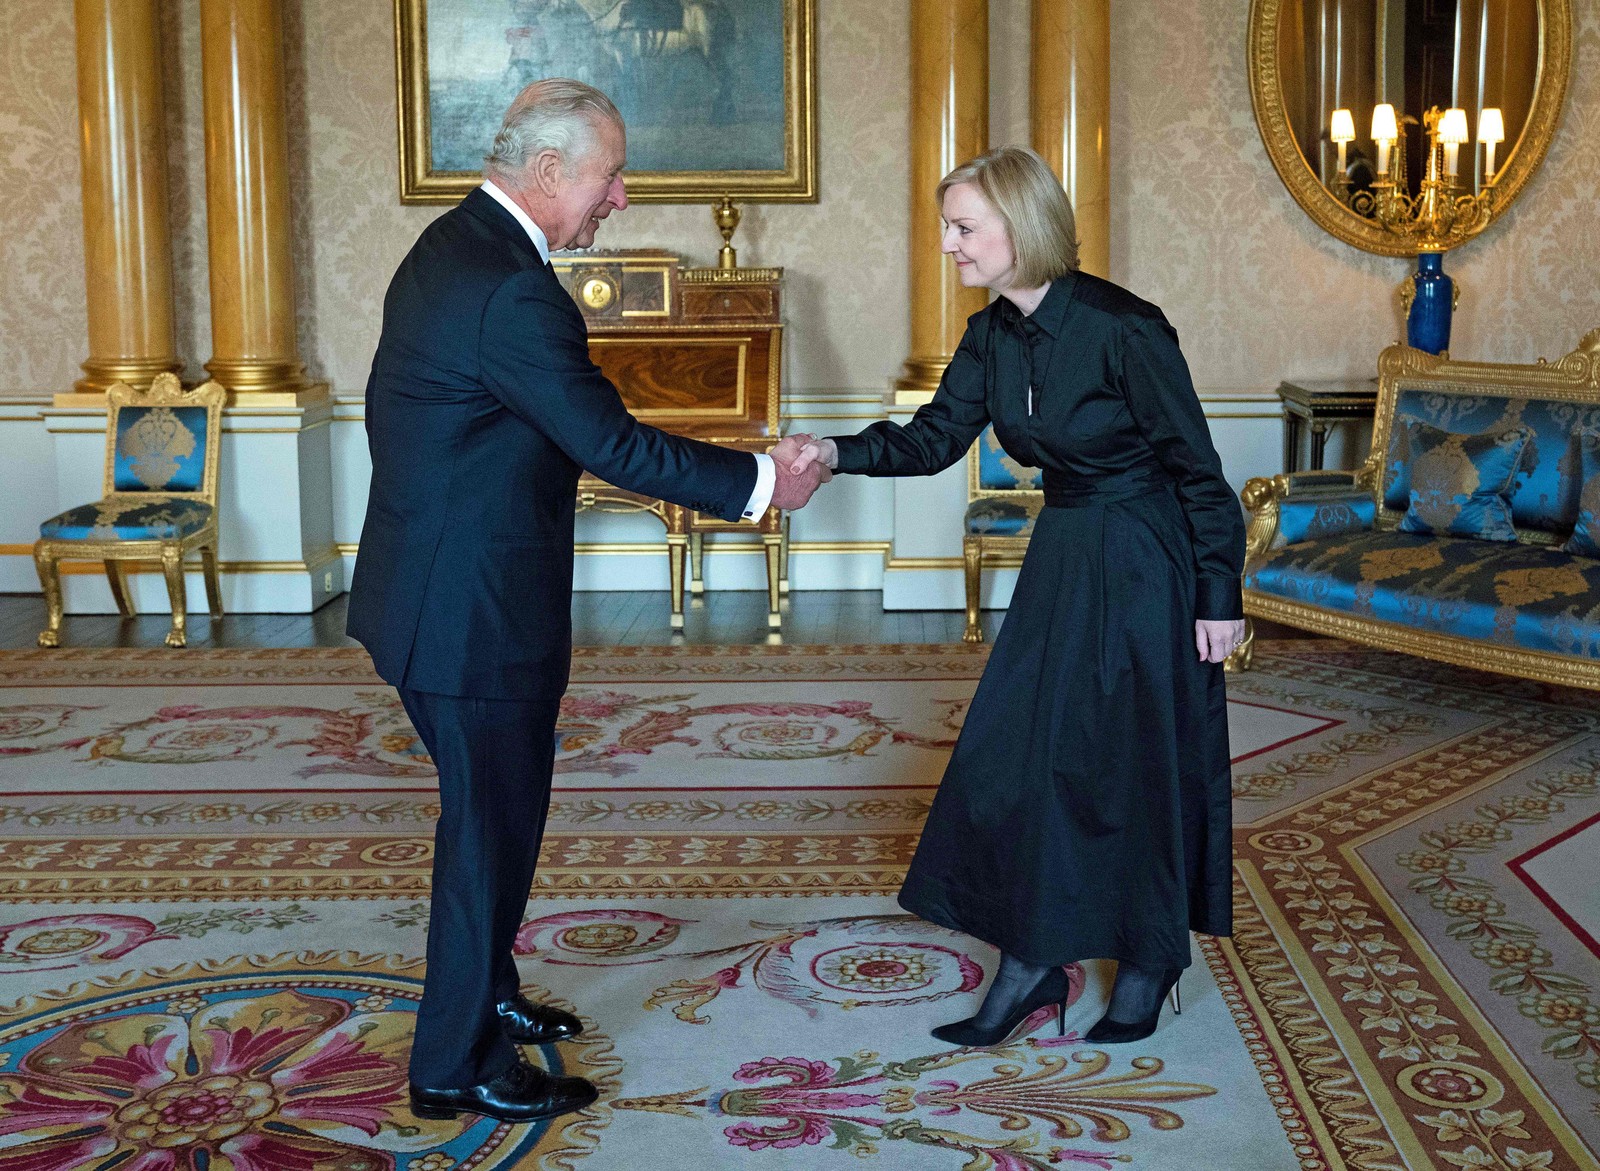 LIz Truss, a primeira-ministra do Reino Unido, cumprimenta o rei Charles III — Foto: Kirsty O'Connor/AFP